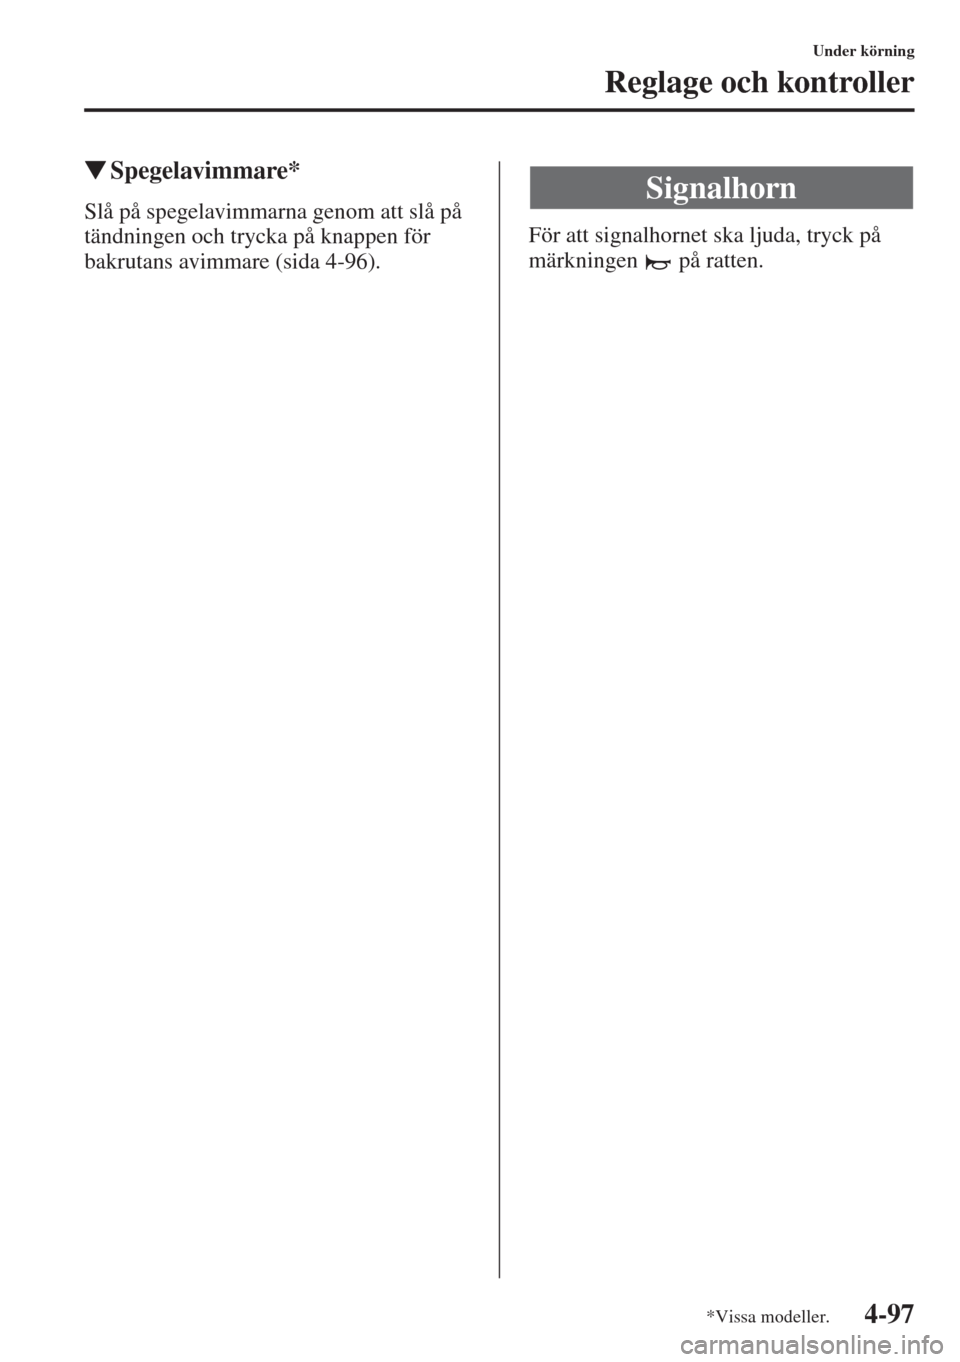 MAZDA MODEL CX-5 2015  Ägarmanual (in Swedish) 4-97
Under körning
Reglage och kontroller
�WSpegelavimmare*
Slå på spegelavimmarna genom att slå på 
tändningen och trycka på knappen för 
bakrutans avimmare (sida 4-96).För att signalhornet 